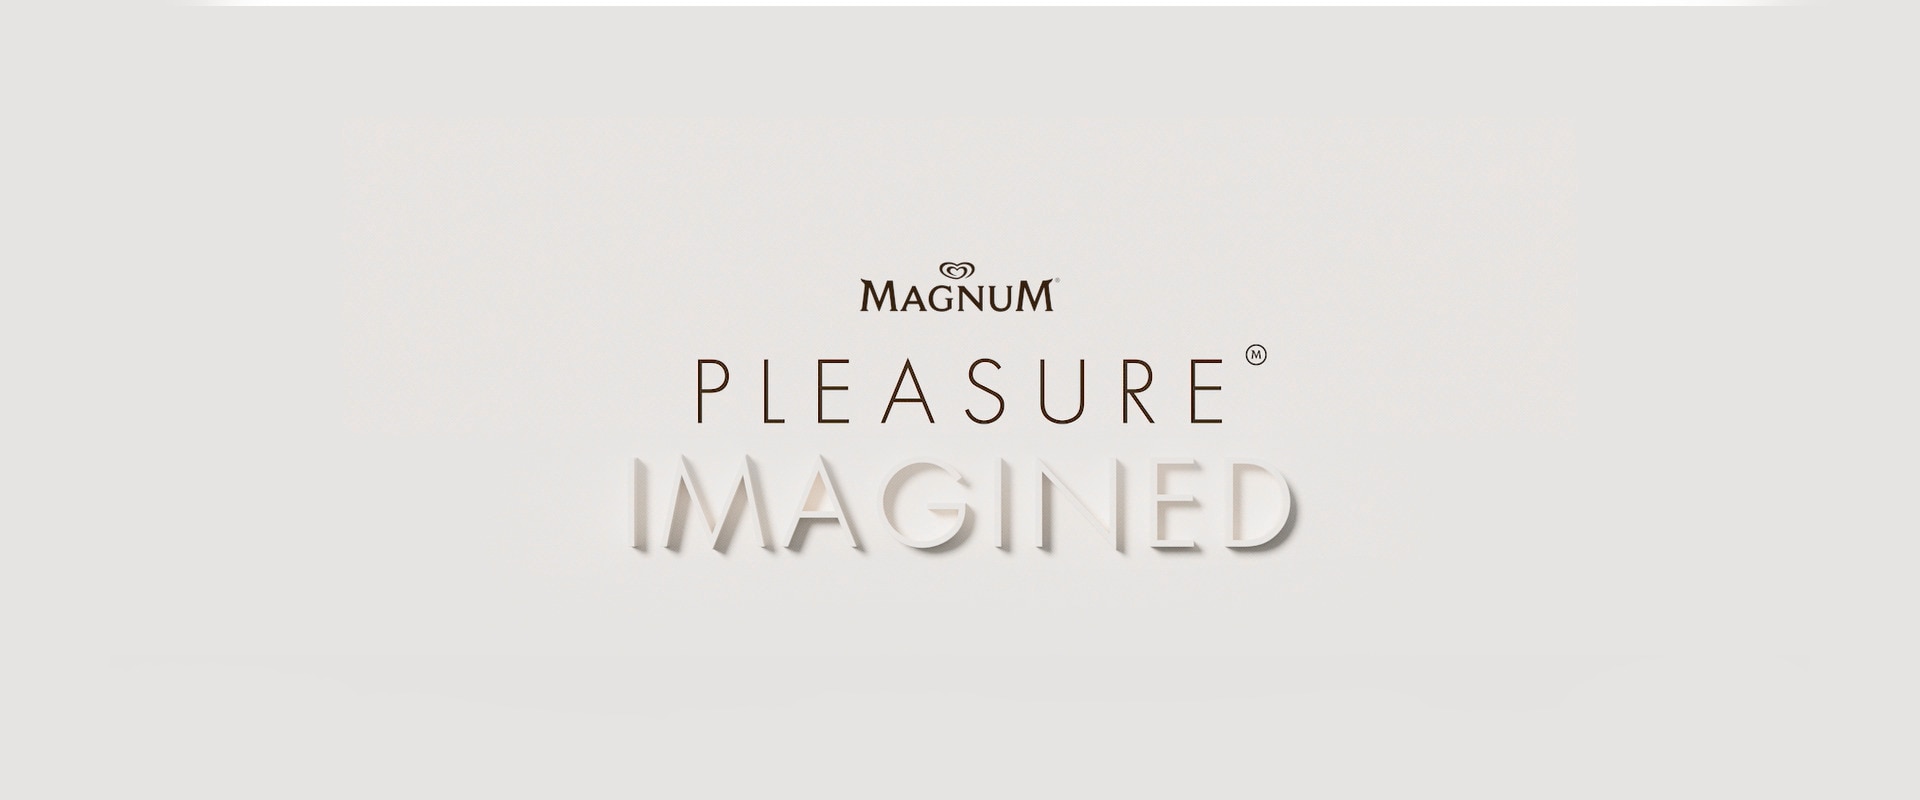 Jetez un œil dans un monde post-verrouillage avec le «plaisir imaginé» de Magnum